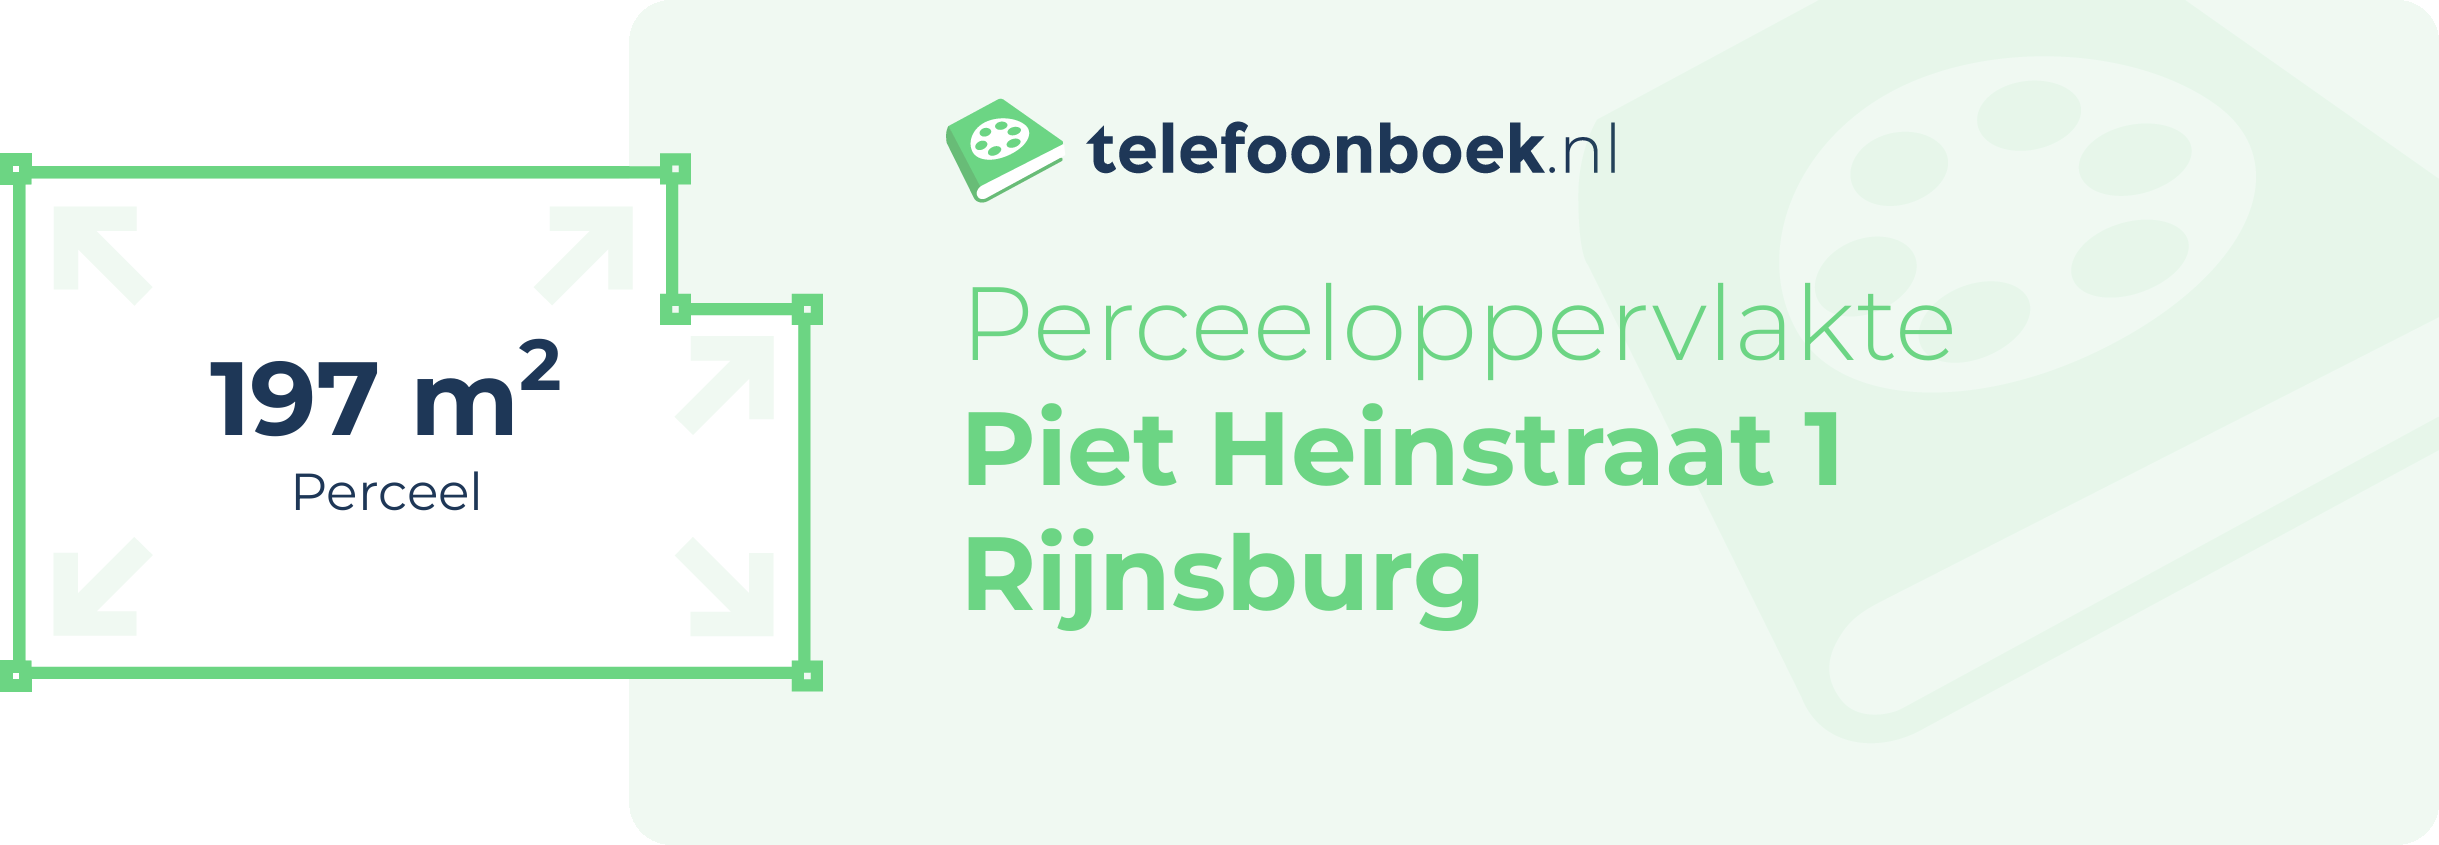 Perceeloppervlakte Piet Heinstraat 1 Rijnsburg